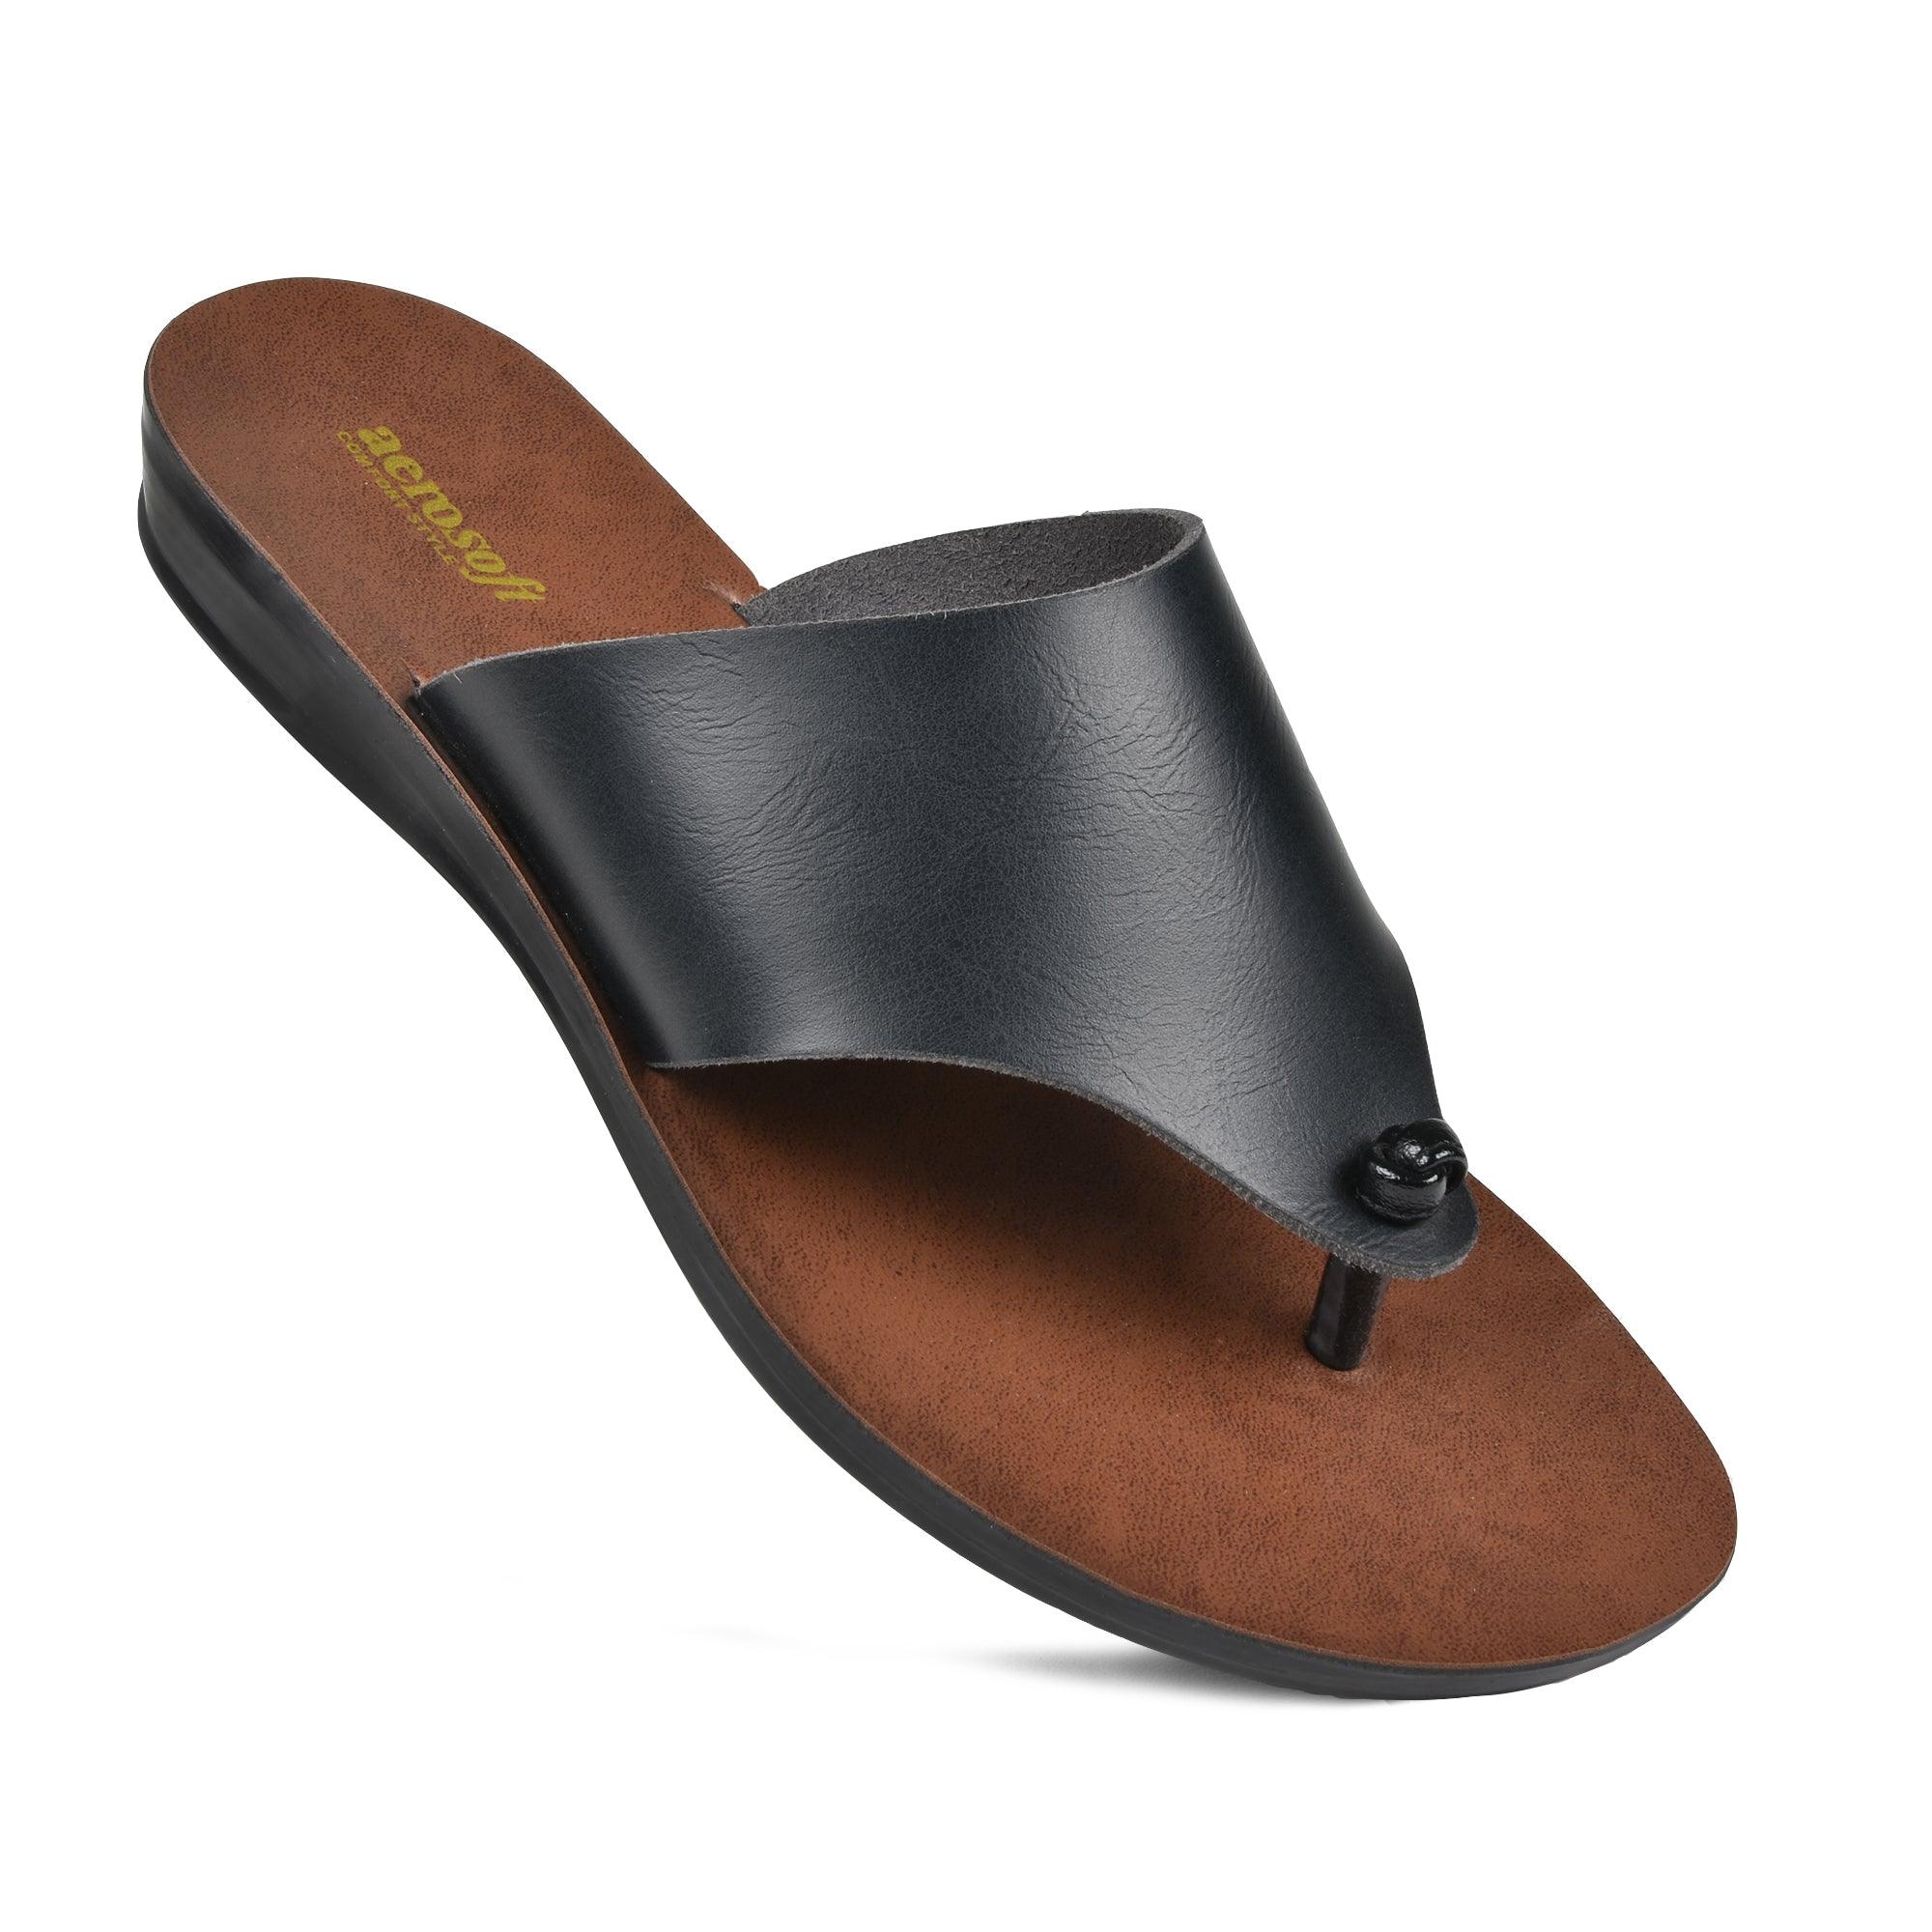 Comfortable Women’s Slide Sandals - KaymoA 